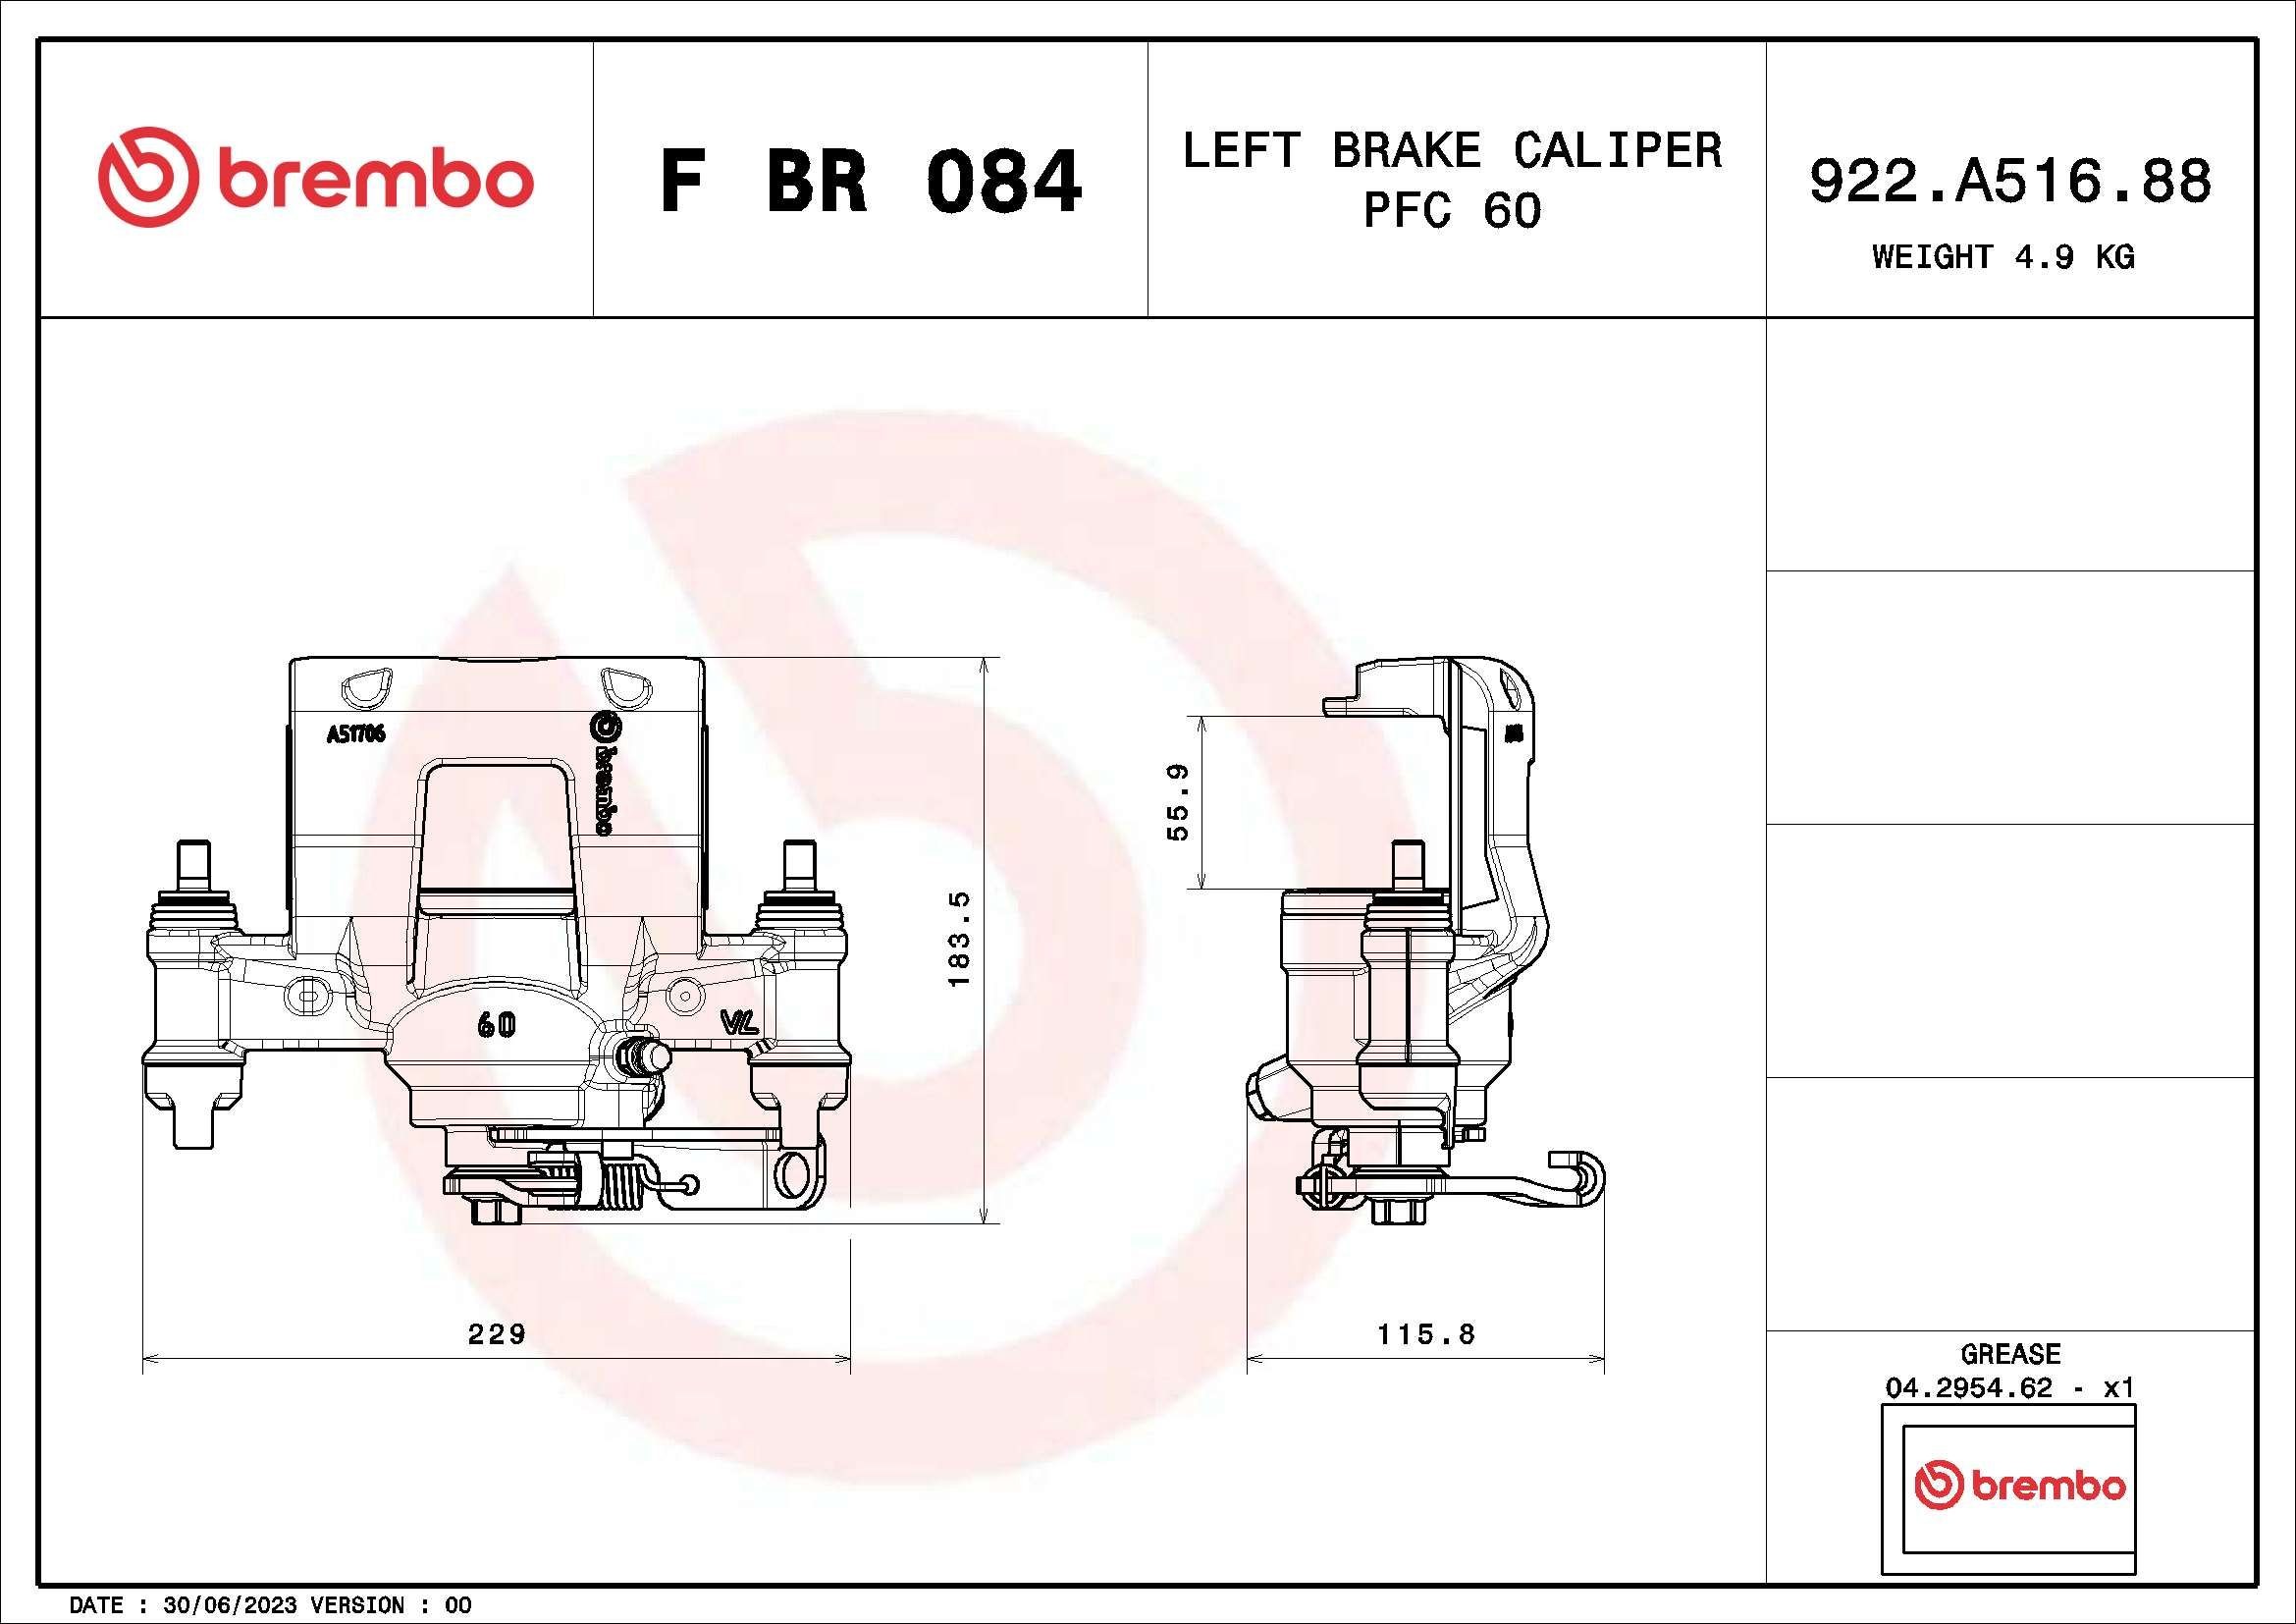 BREMBO Calipers F BR 084